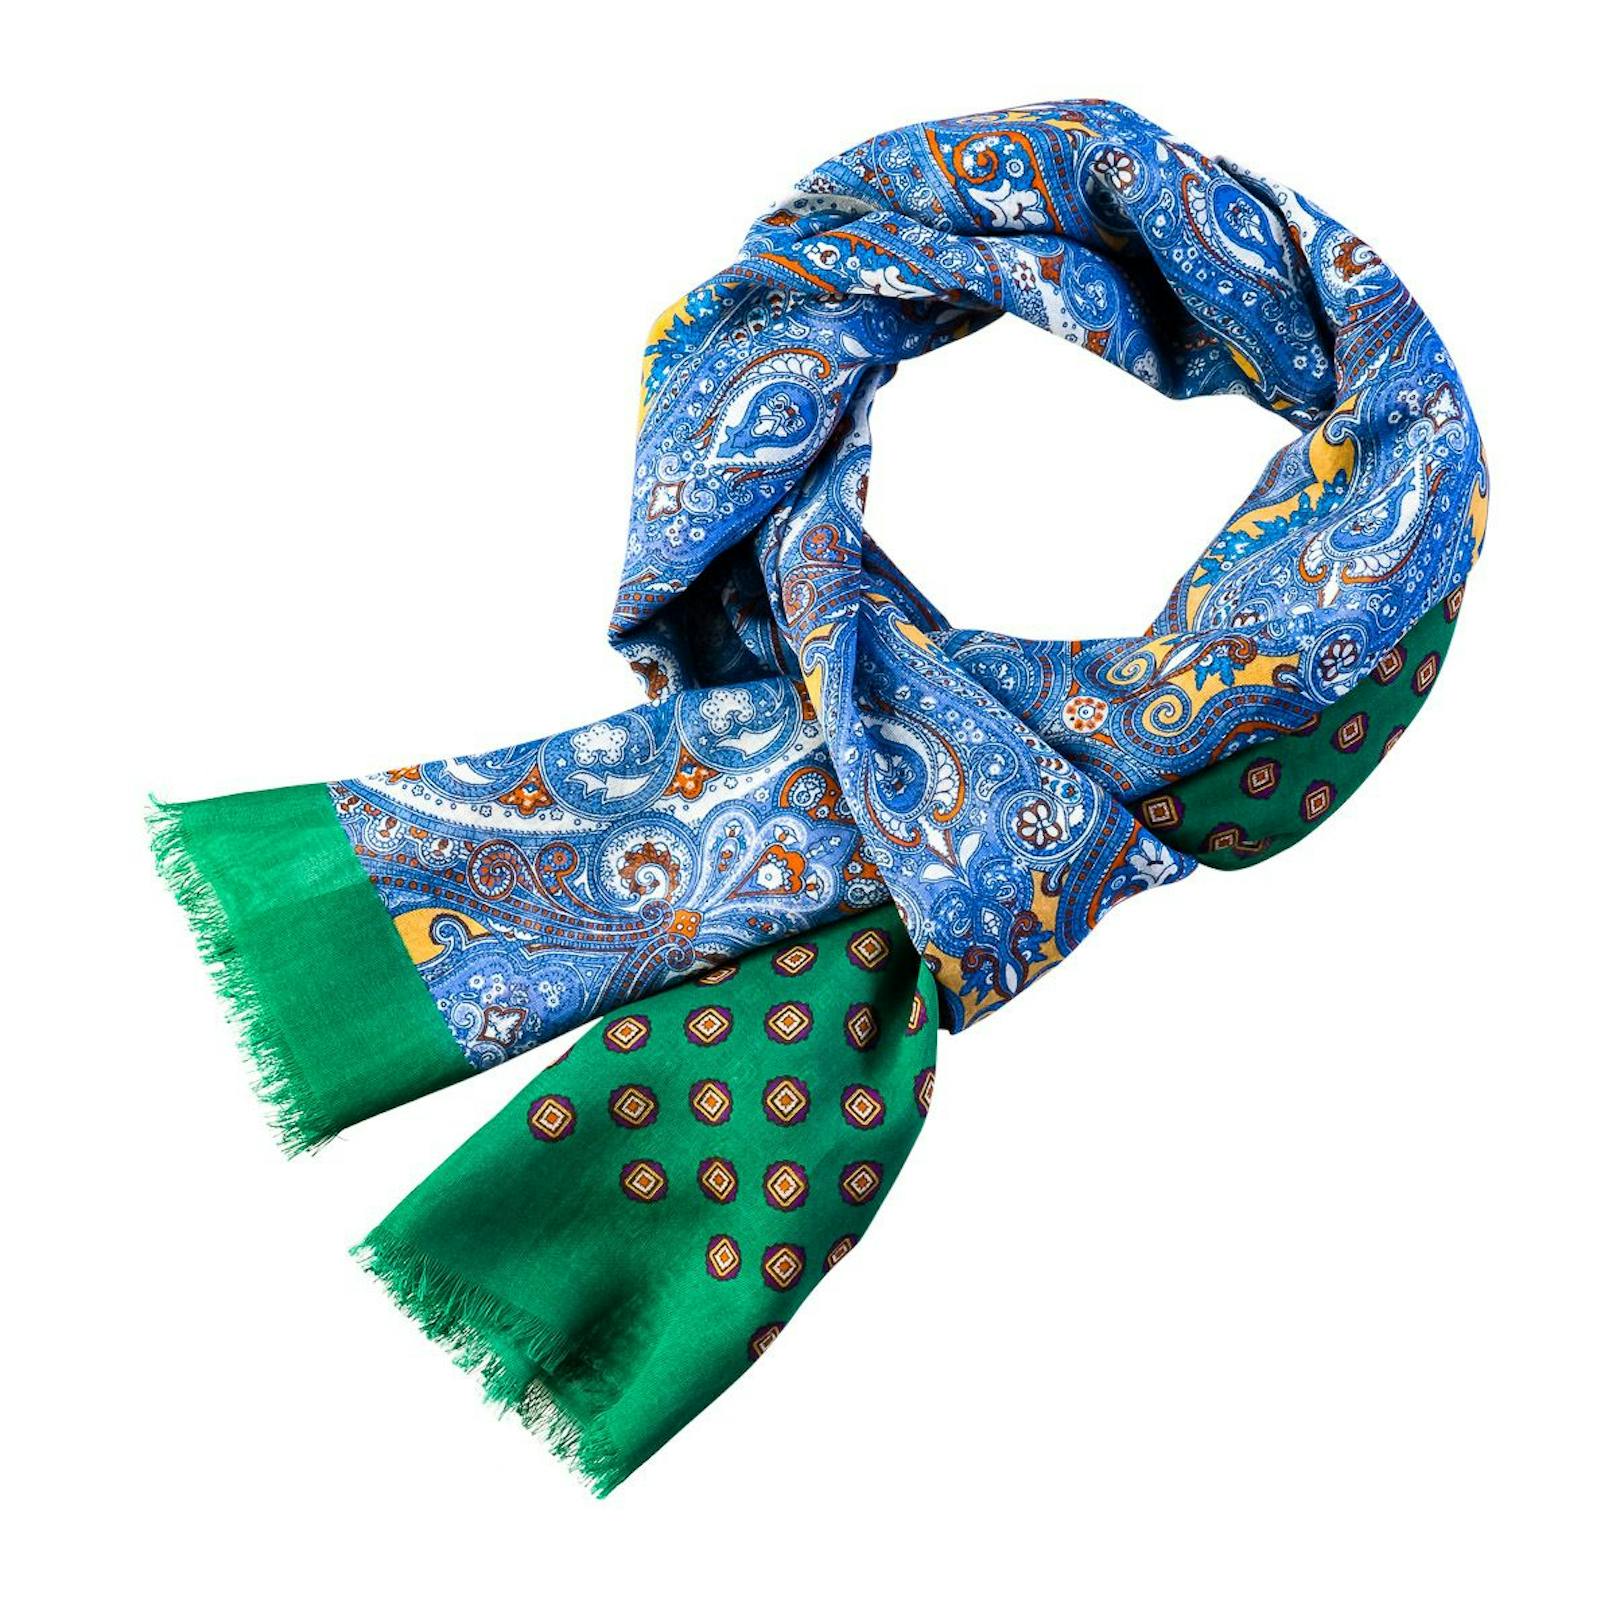 Schal ist aus Cotton soft – das perfekte Sommermaterial mit Patch-Design und zwei verschiedenen Schal-Enden.